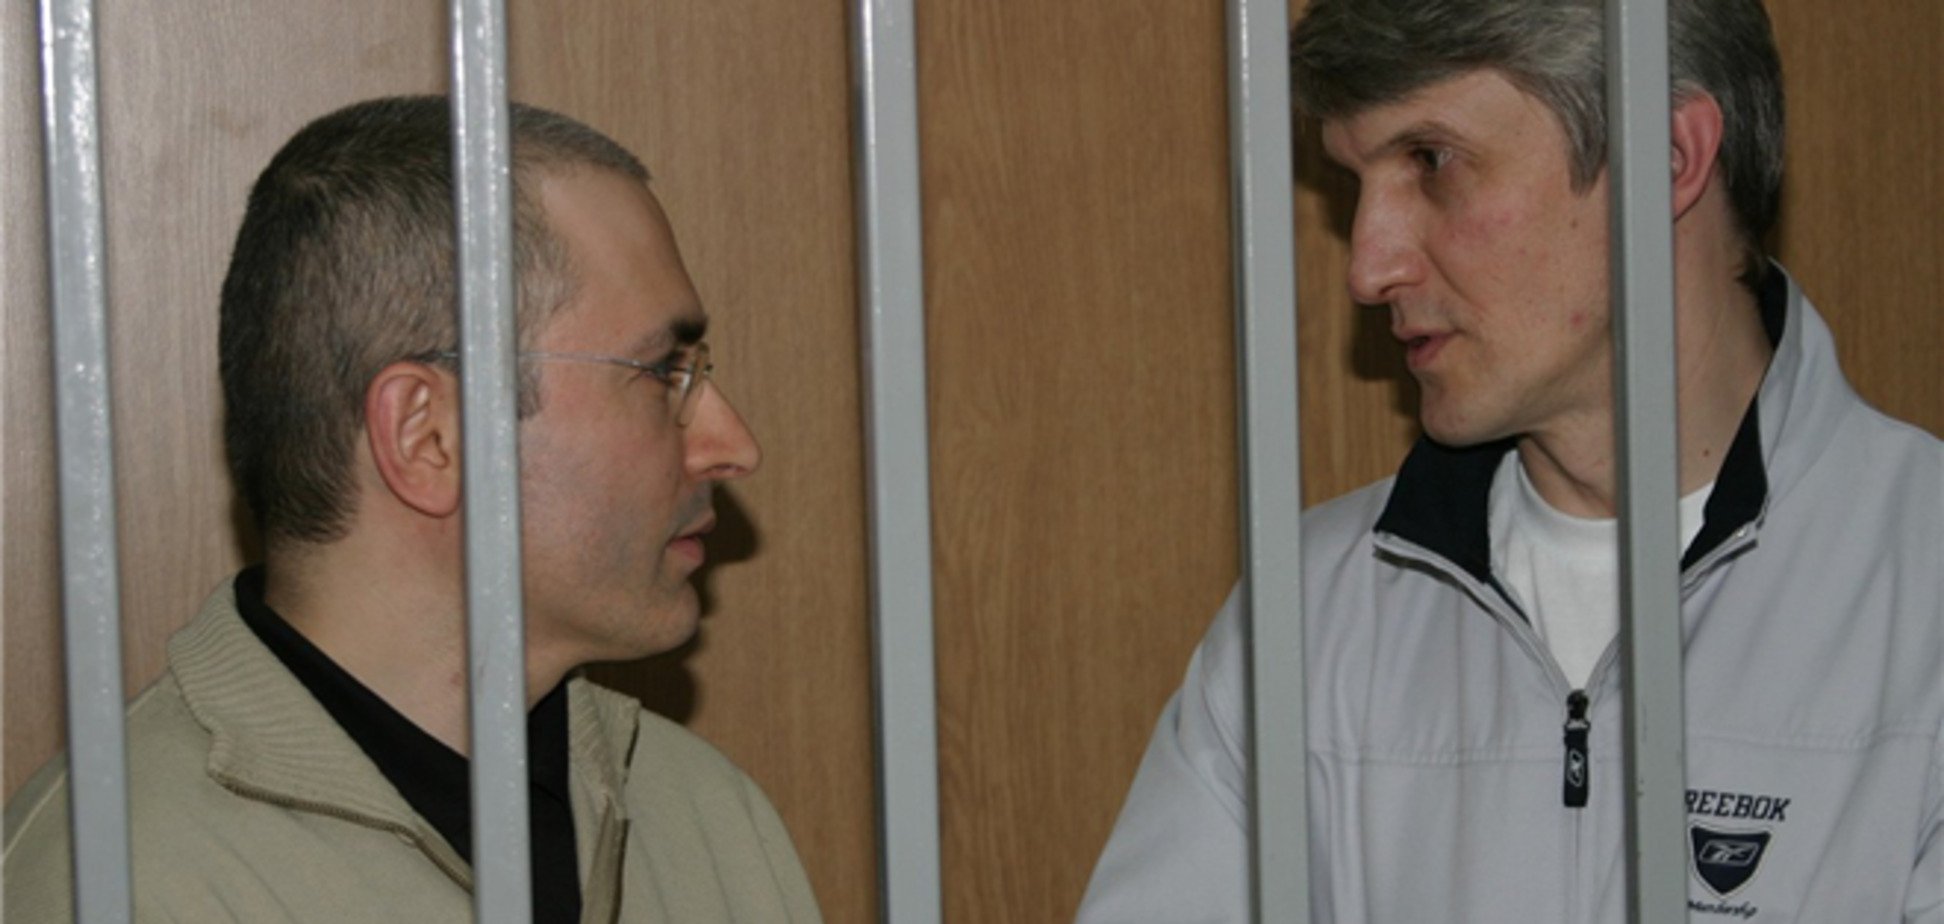 ЄСПЛ: справа Ходорковського не політична